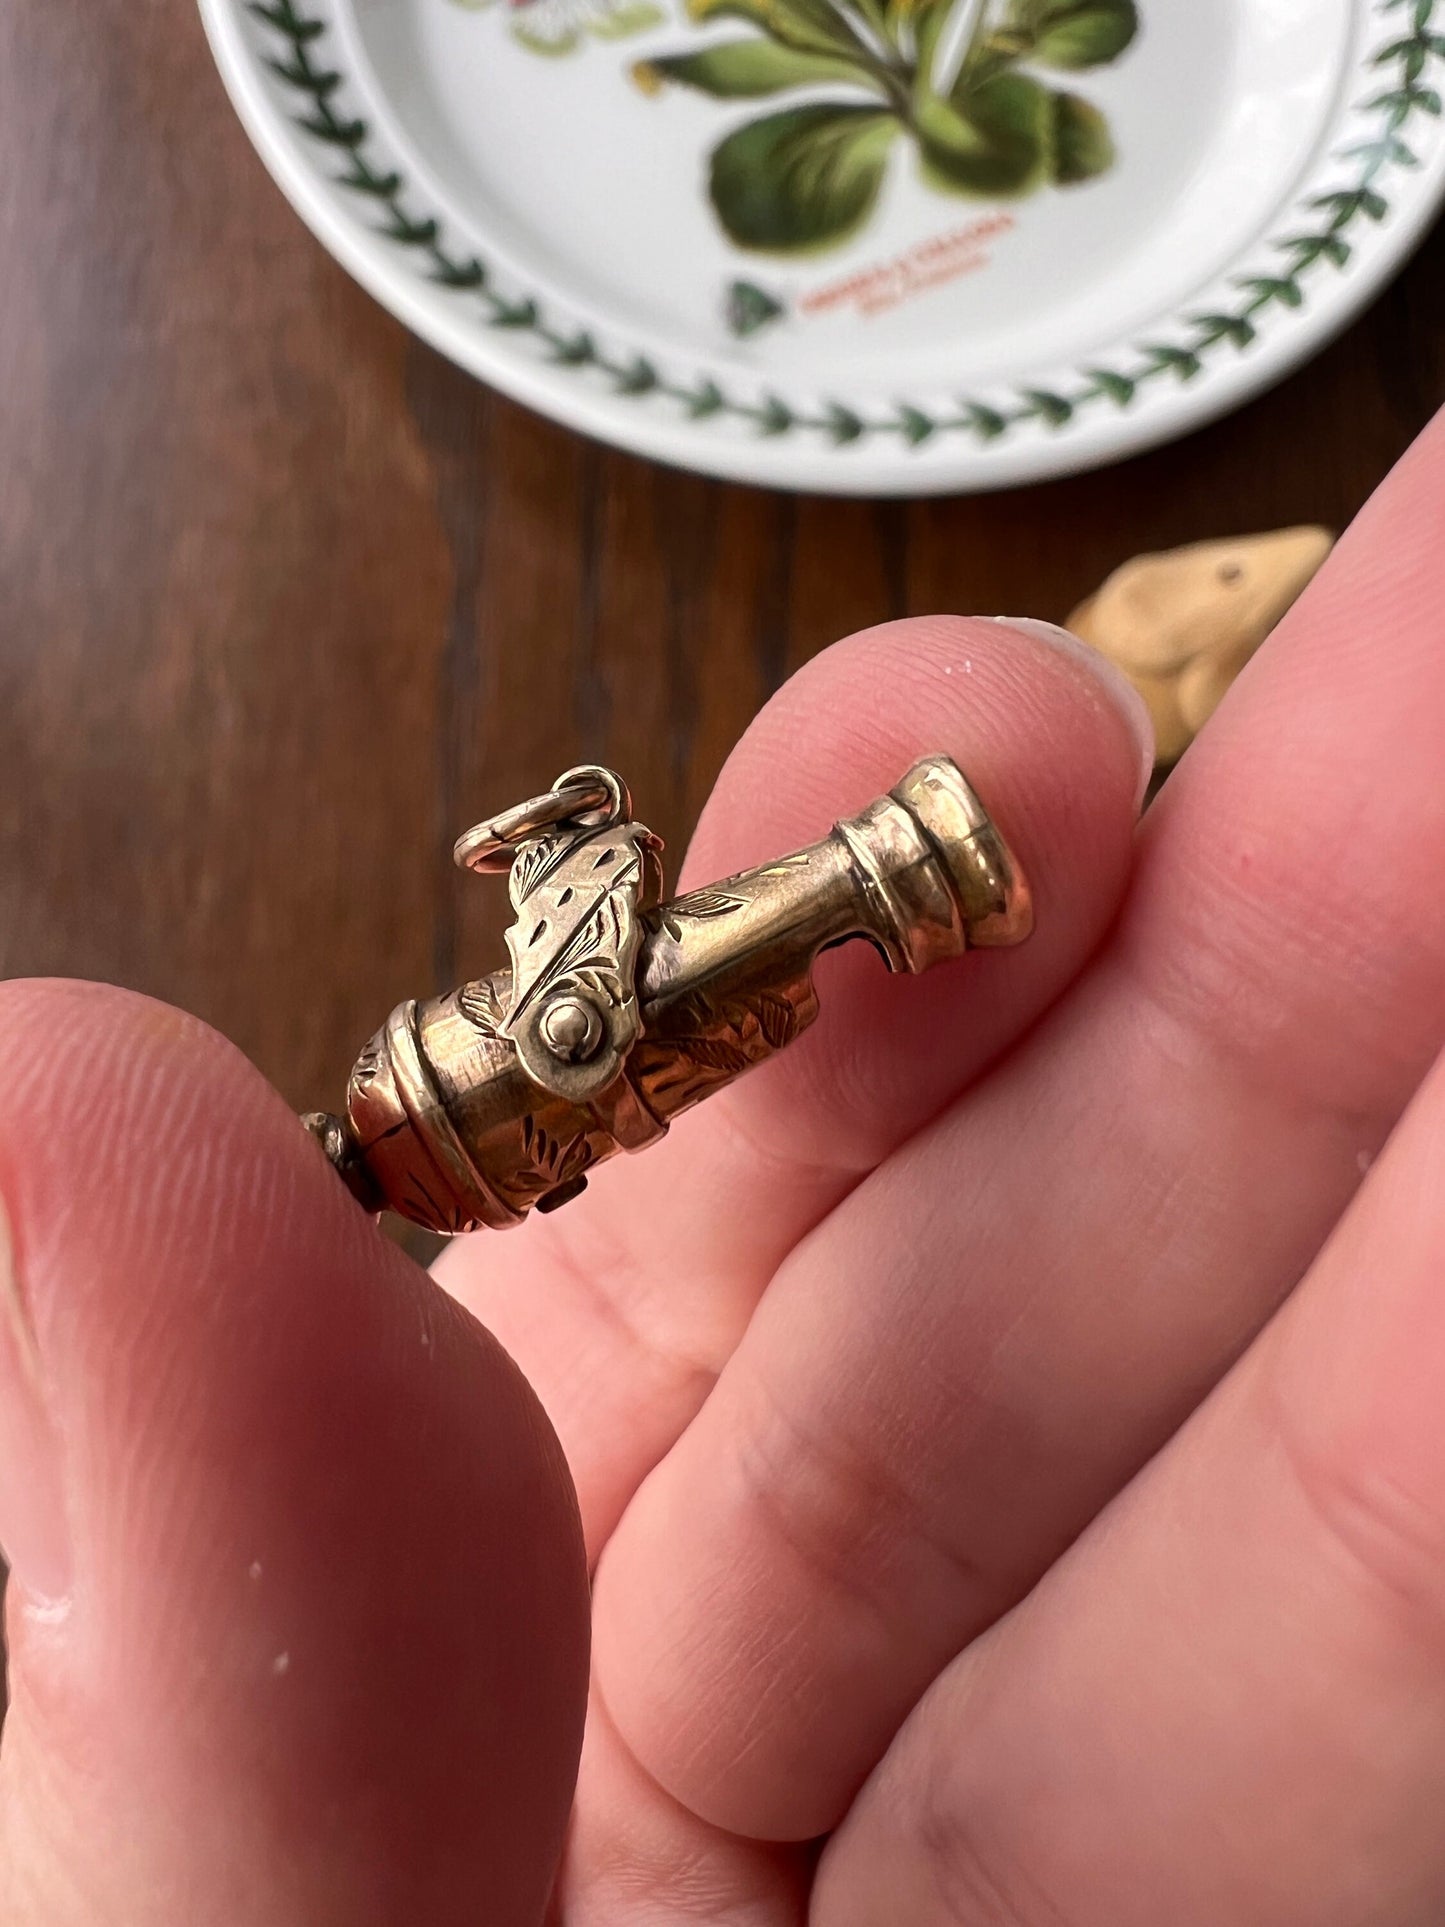 WHISTLE Victorian ANTIQUE Cannon 10k GOLD Figural Pendant Neckmess Neckstack Lifelike Engraved Unique Unisex Gift Charm 3D Reversible Swivel